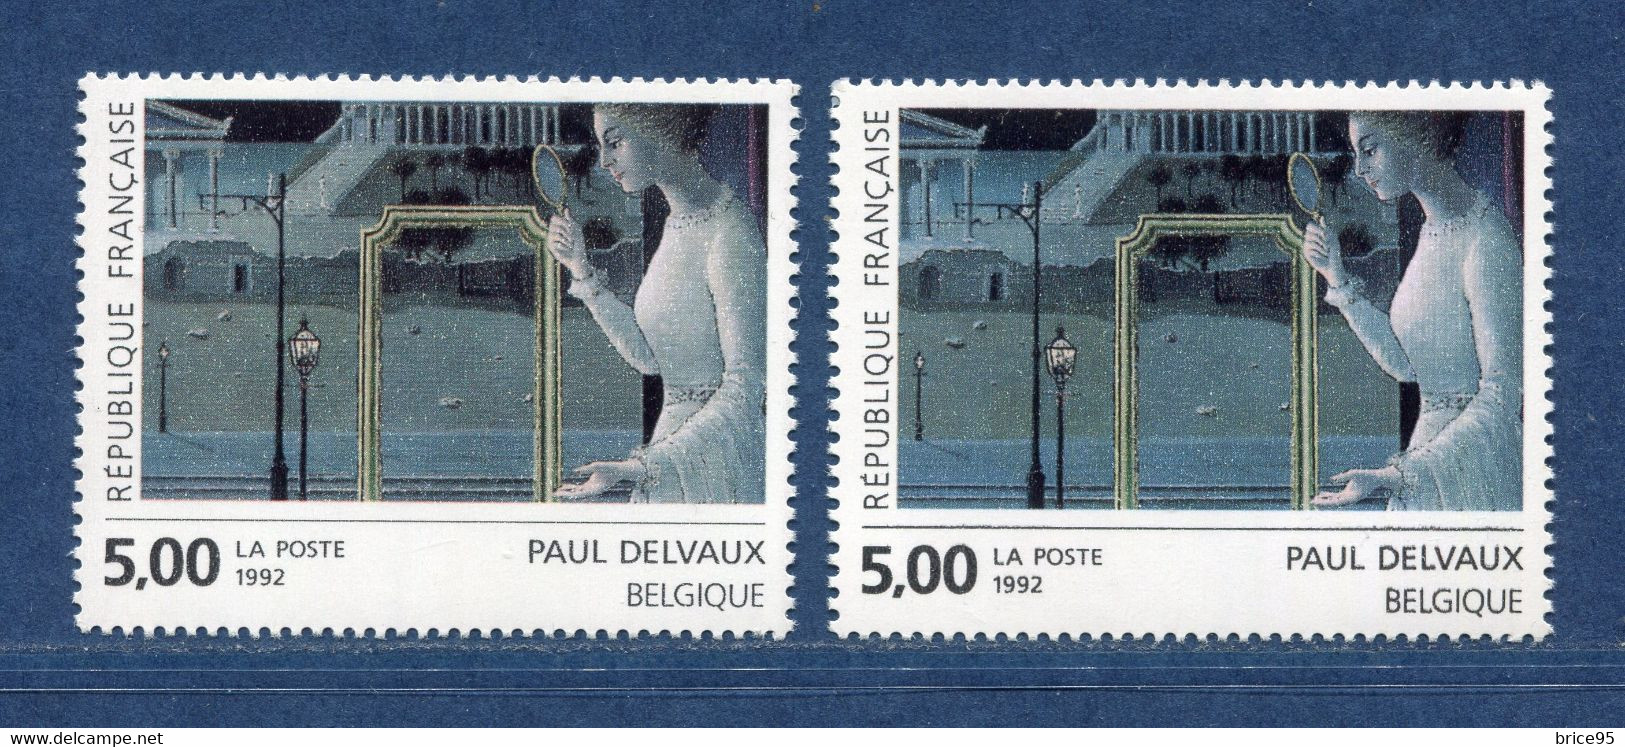 ⭐ France - Variété - YT N° 2781 - Couleurs - Pétouilles - Neuf Sans Charnière - 1992 ⭐ - Nuevos